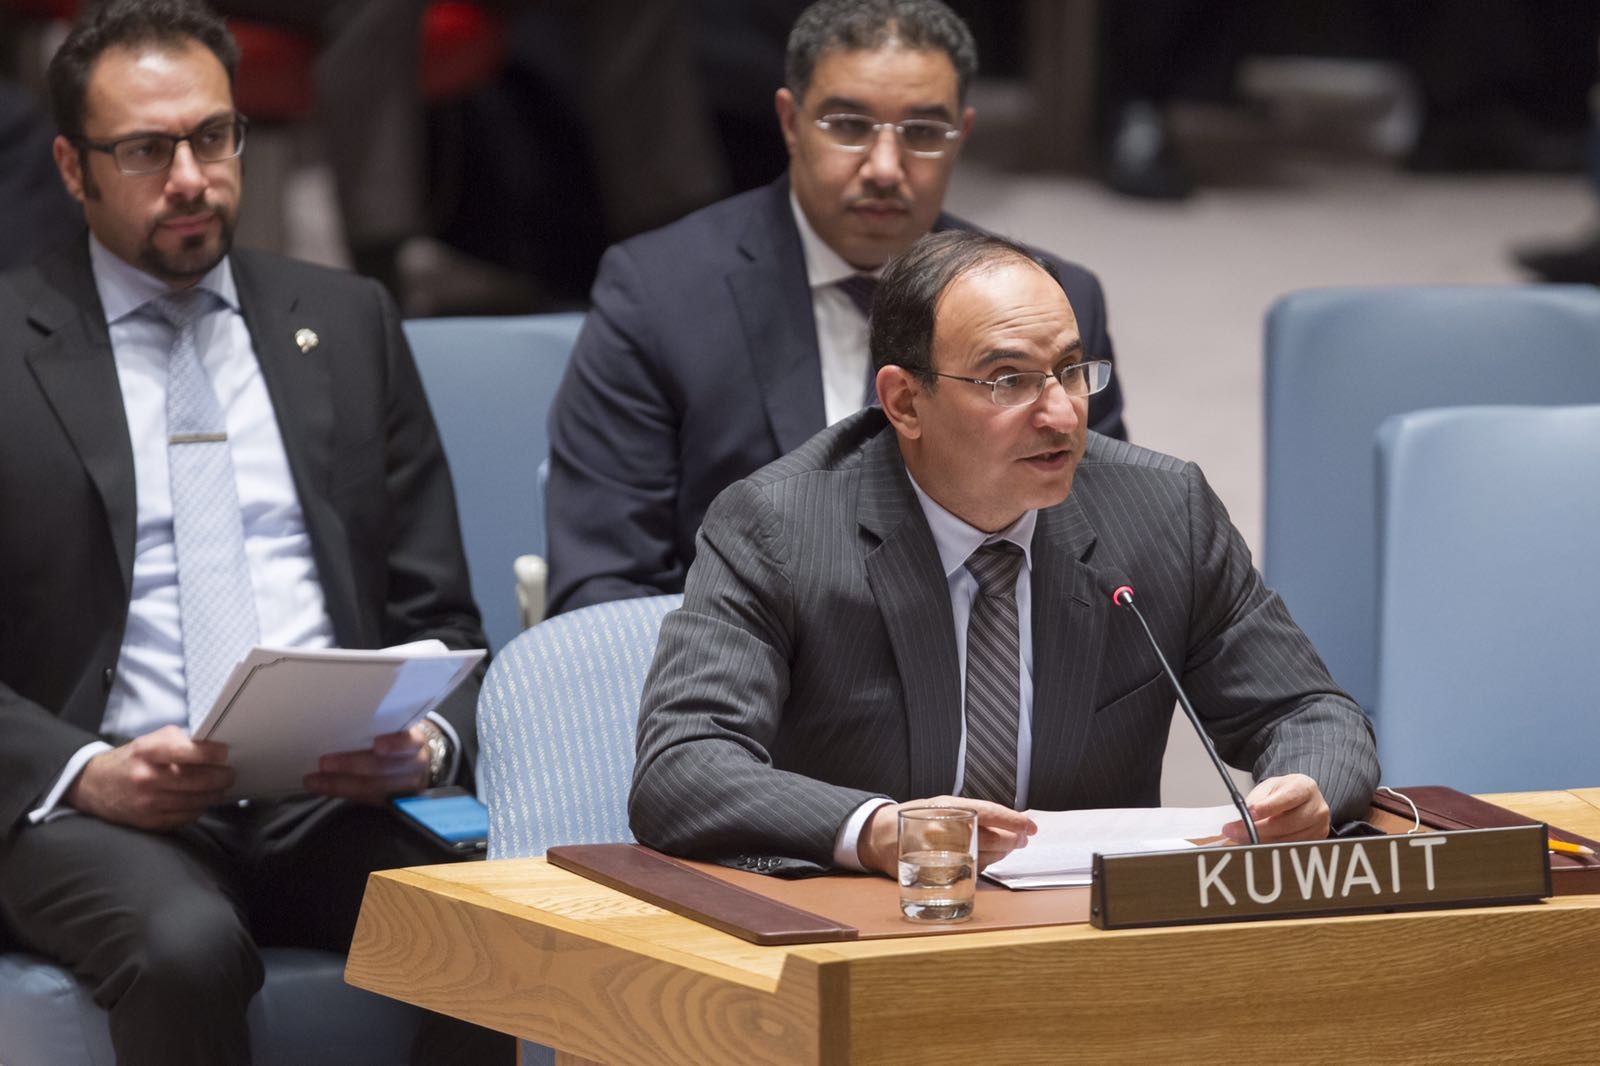 Kuwait's Delegate to the UN Ambassador Mansour Al-Otaibi